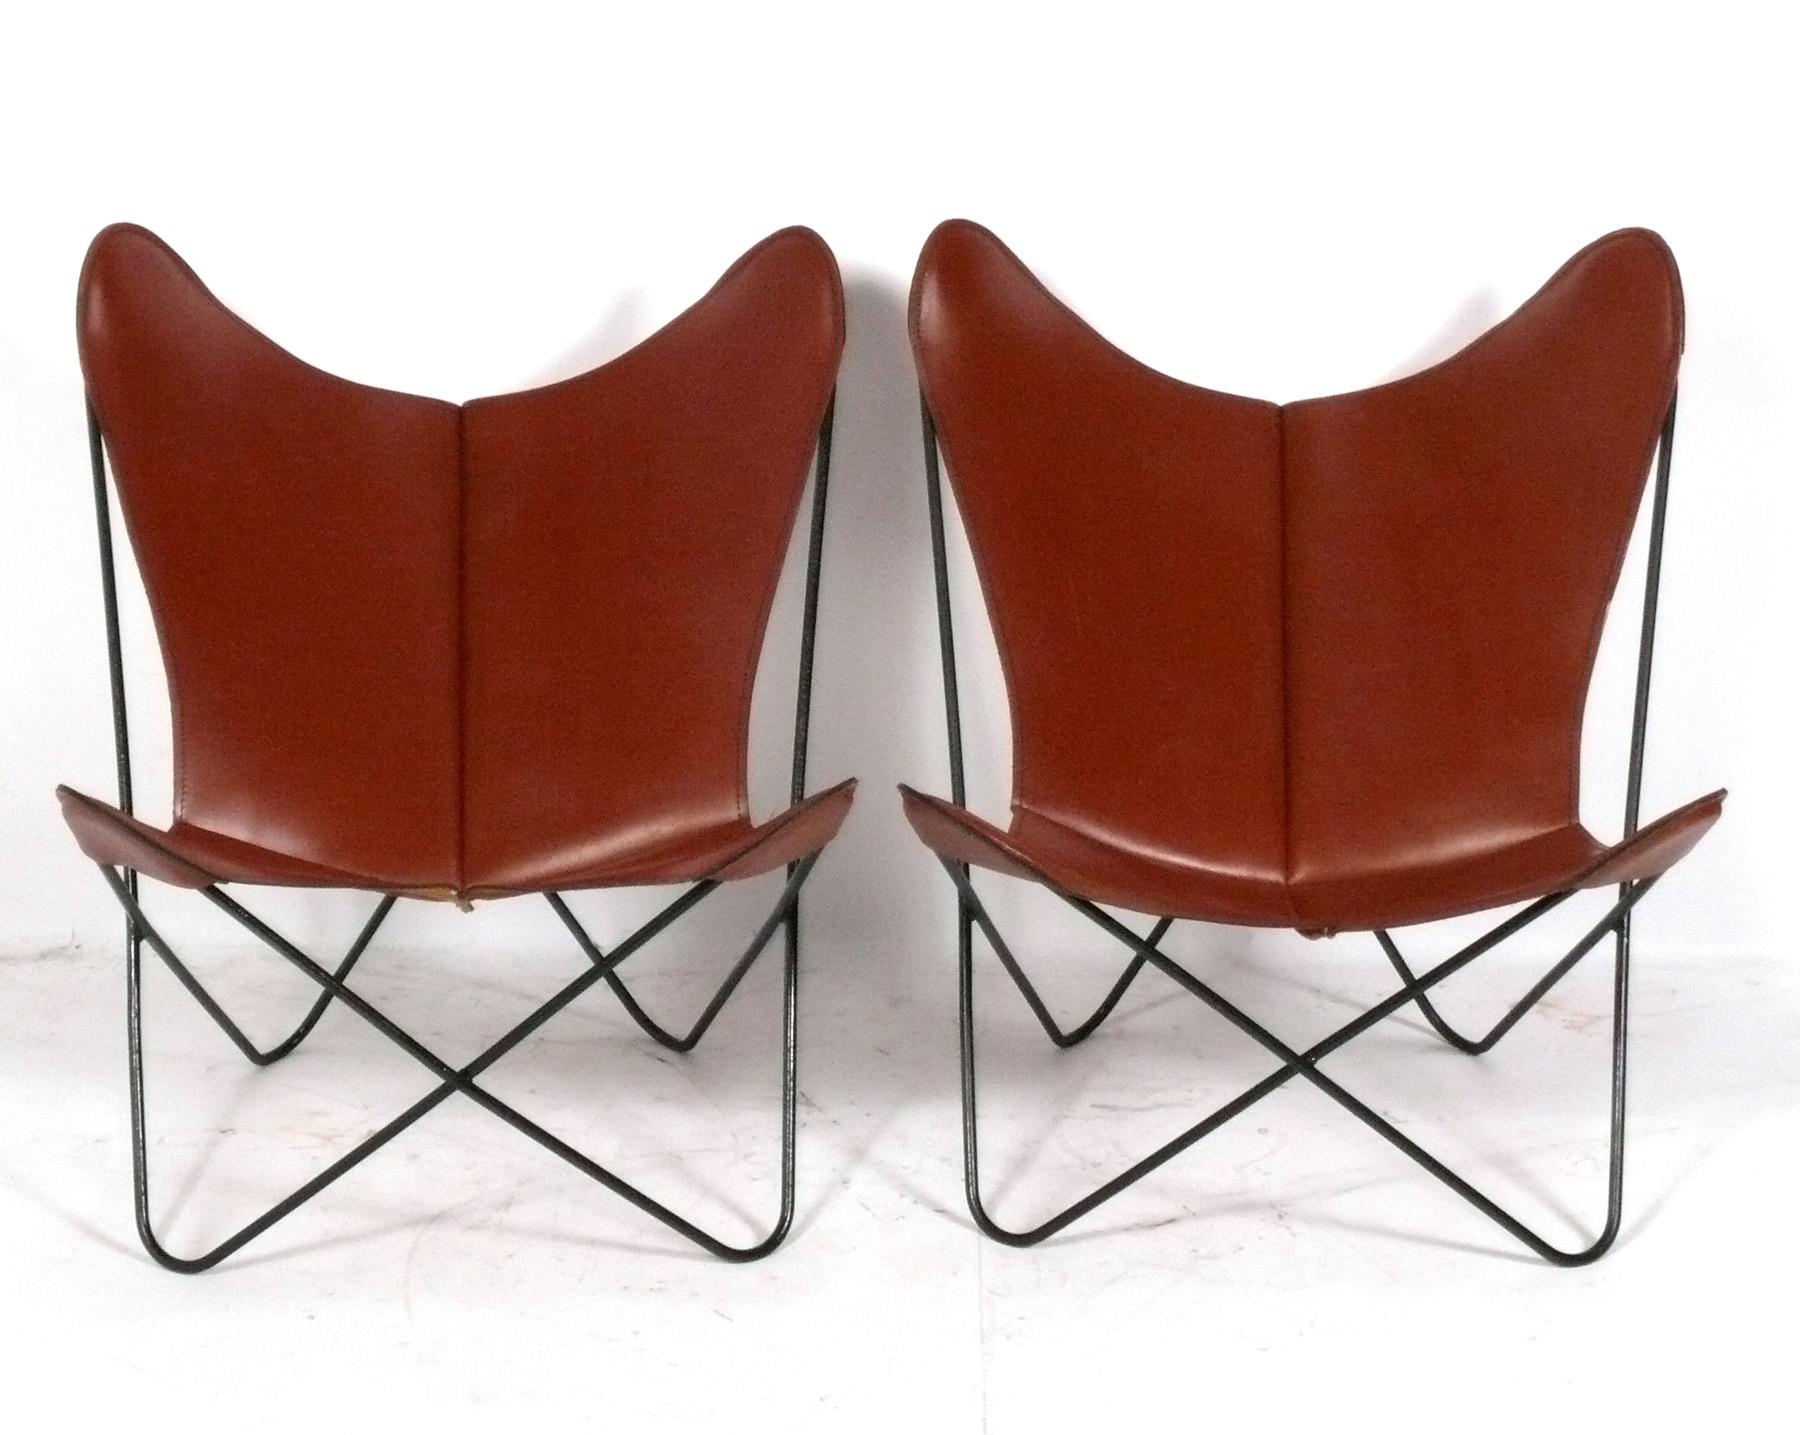 Zwei skulpturale Schmetterlingssessel, entworfen von Jorge Ferrari-Hardoy, ca. 1960er Jahre. Diese Stühle, die nur selten in ihrem ursprünglichen cognacfarbenen Leder zu sehen sind, haben eine tolle Patina, die man nur mit dem Alter erhält.